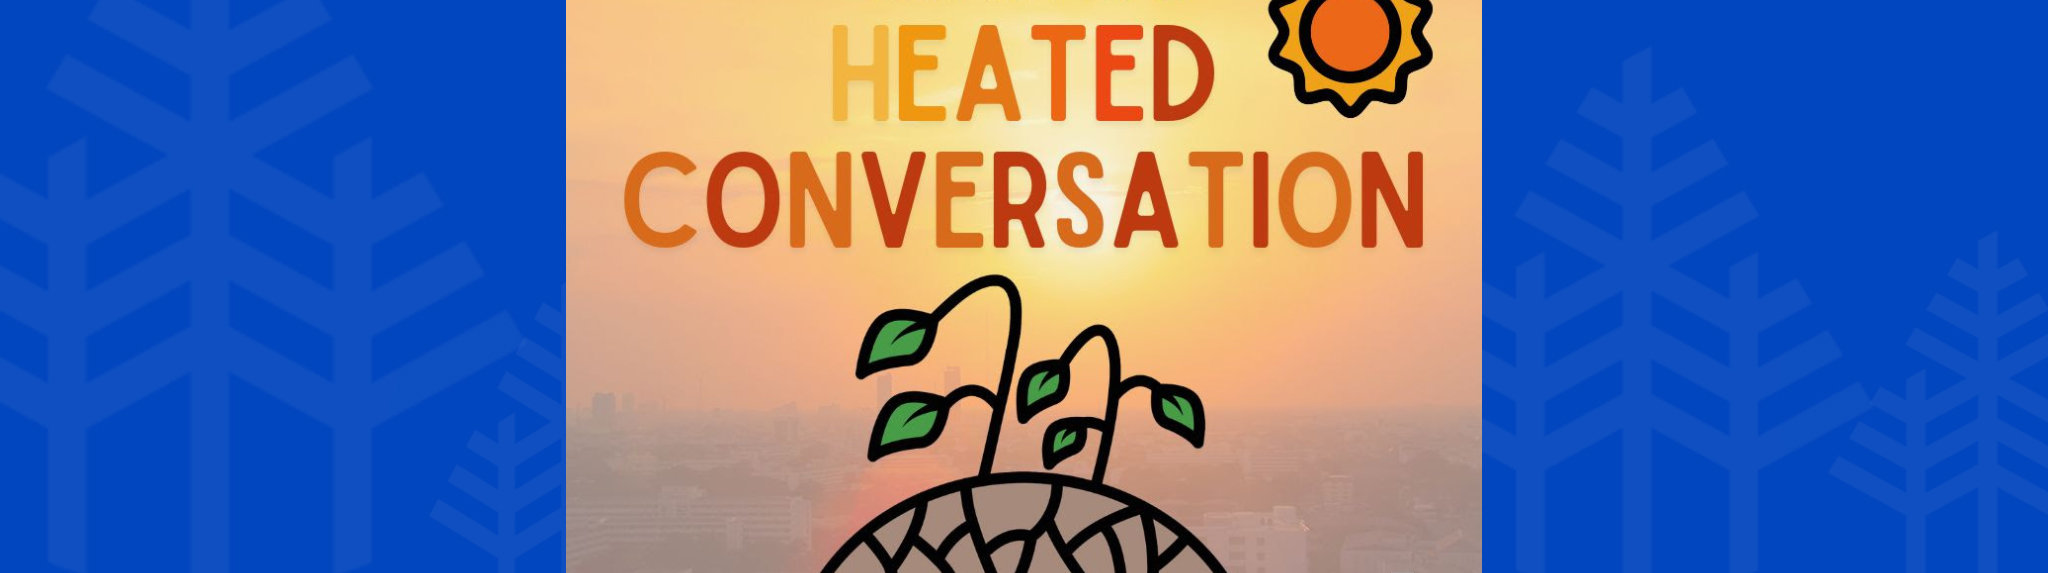 Heated Conversation online event